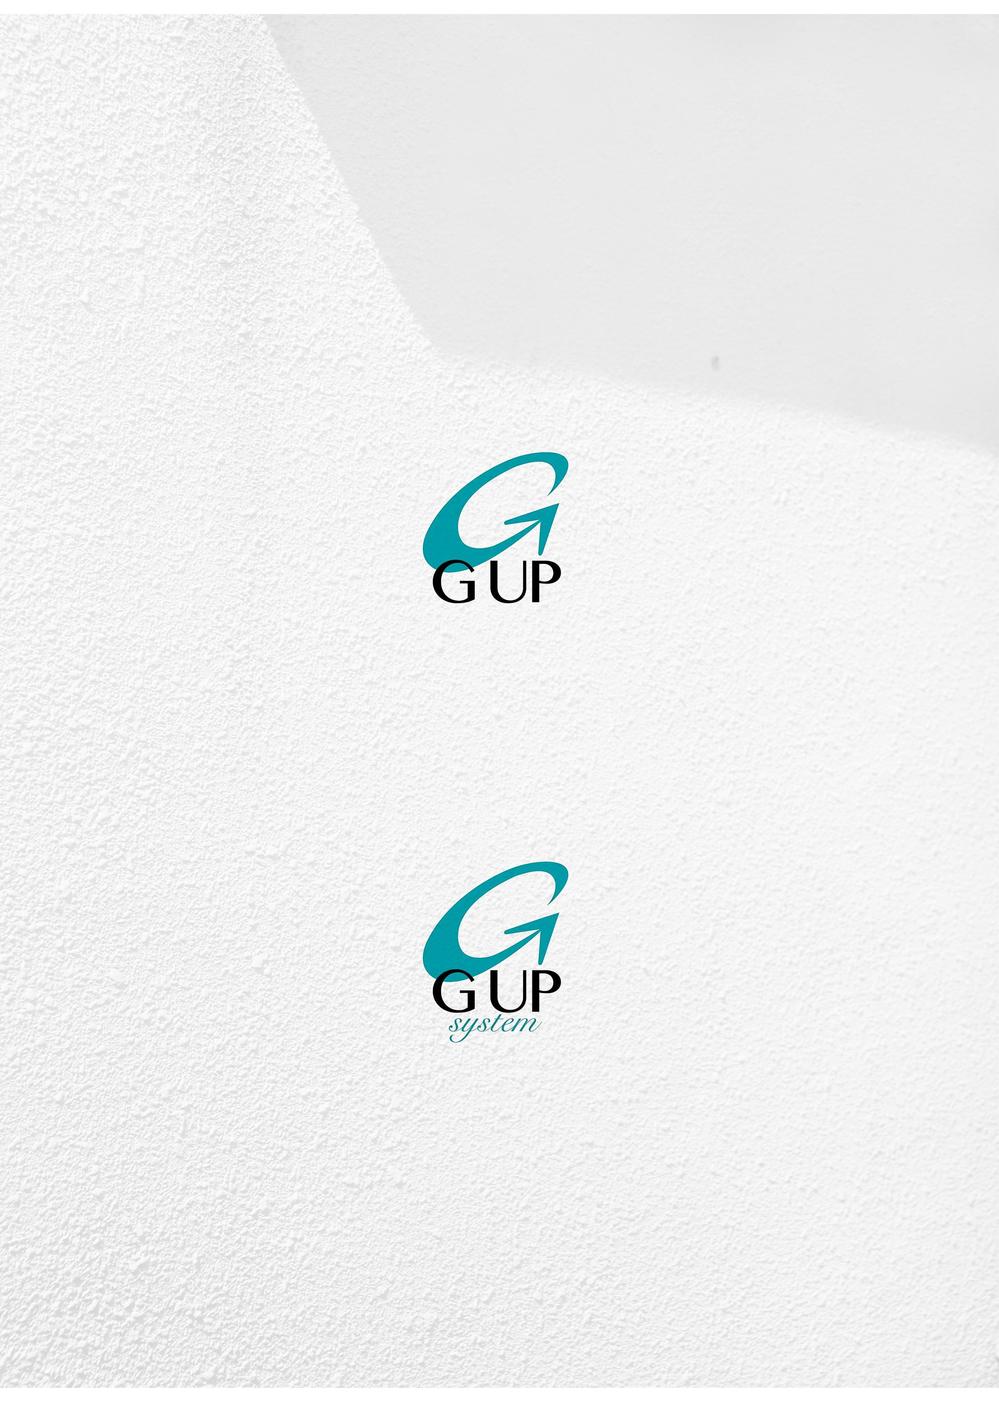 GUP_アートボード 1.jpg